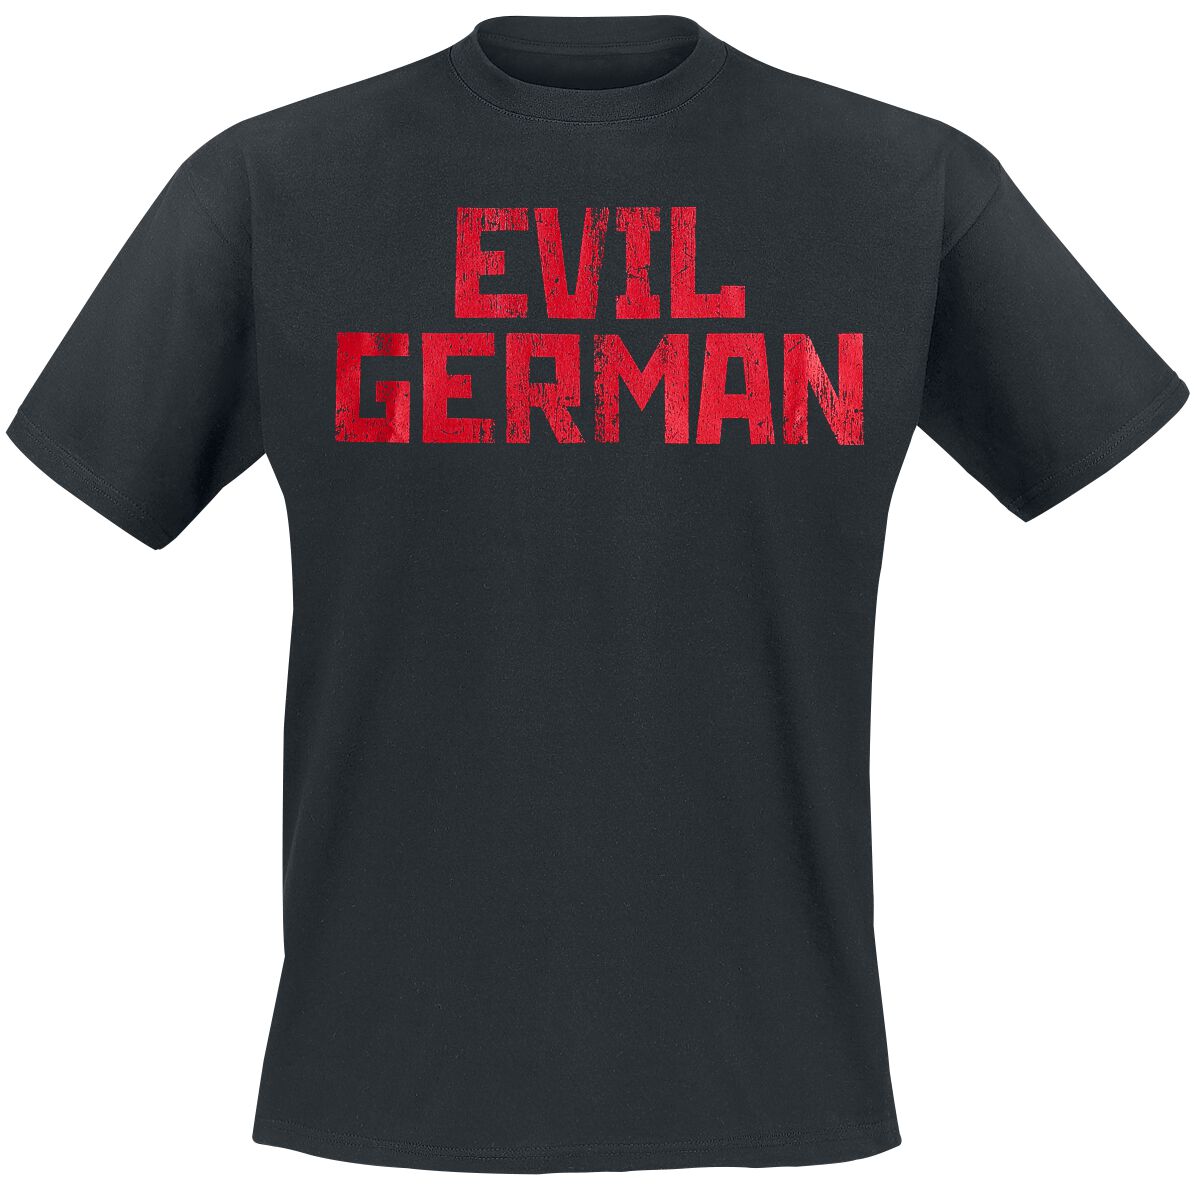 Rammstein T-Shirt - Evil German - 3XL bis 5XL - für Männer - Größe 4XL - schwarz  - Lizenziertes Merchandise!